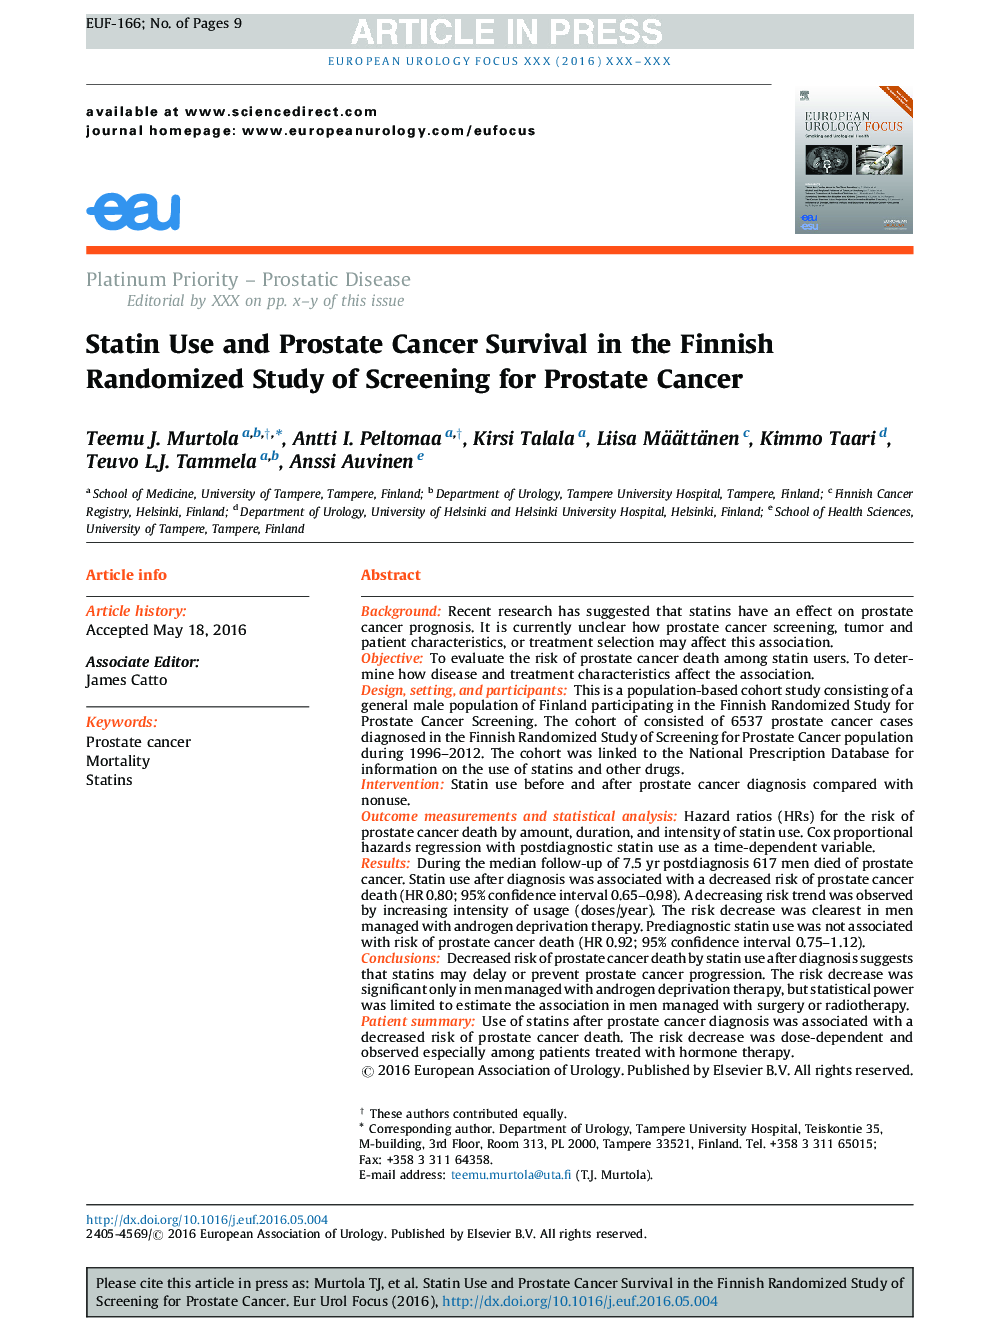 استفاده از استاتین و بقاء سرطان پروستات در مطالعات تصادفی فنلاندی غربالگری سرطان پروستات 